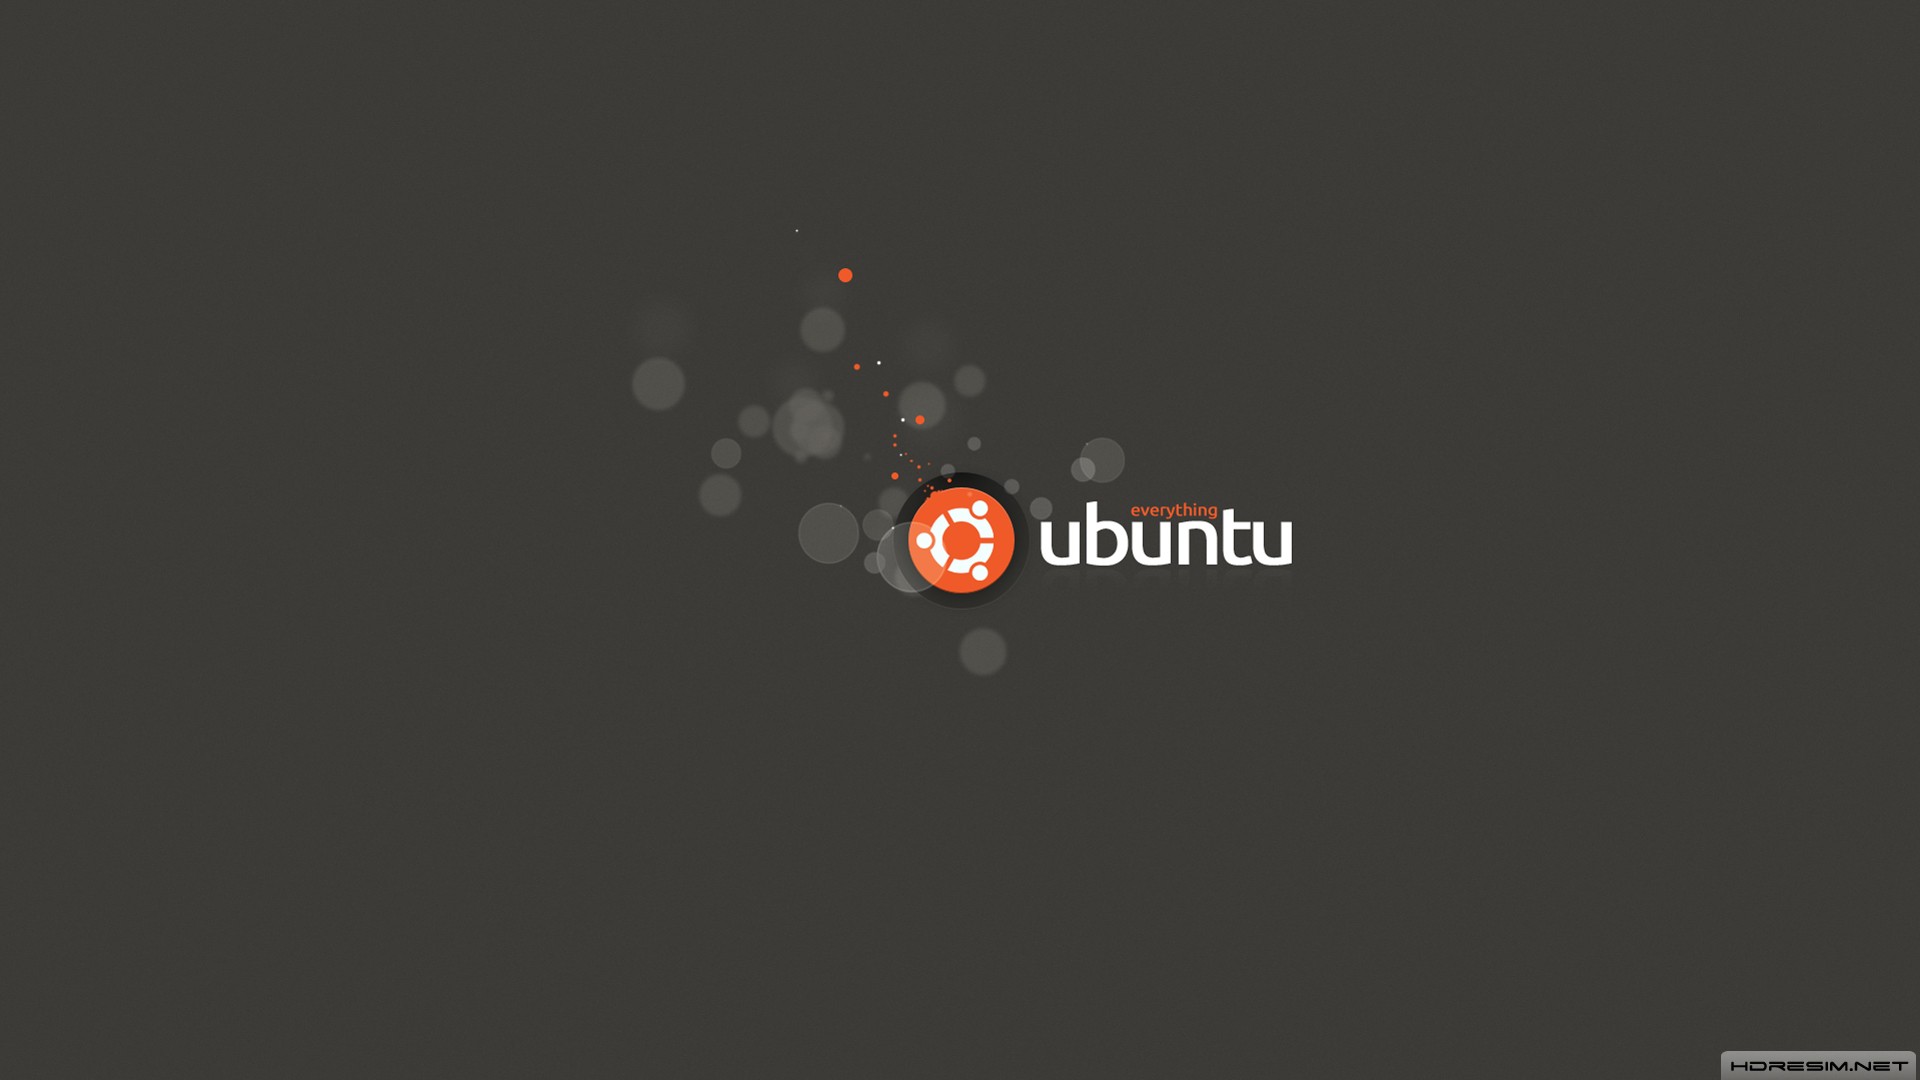 ubuntu,işletim sistemi,yazılım,logo